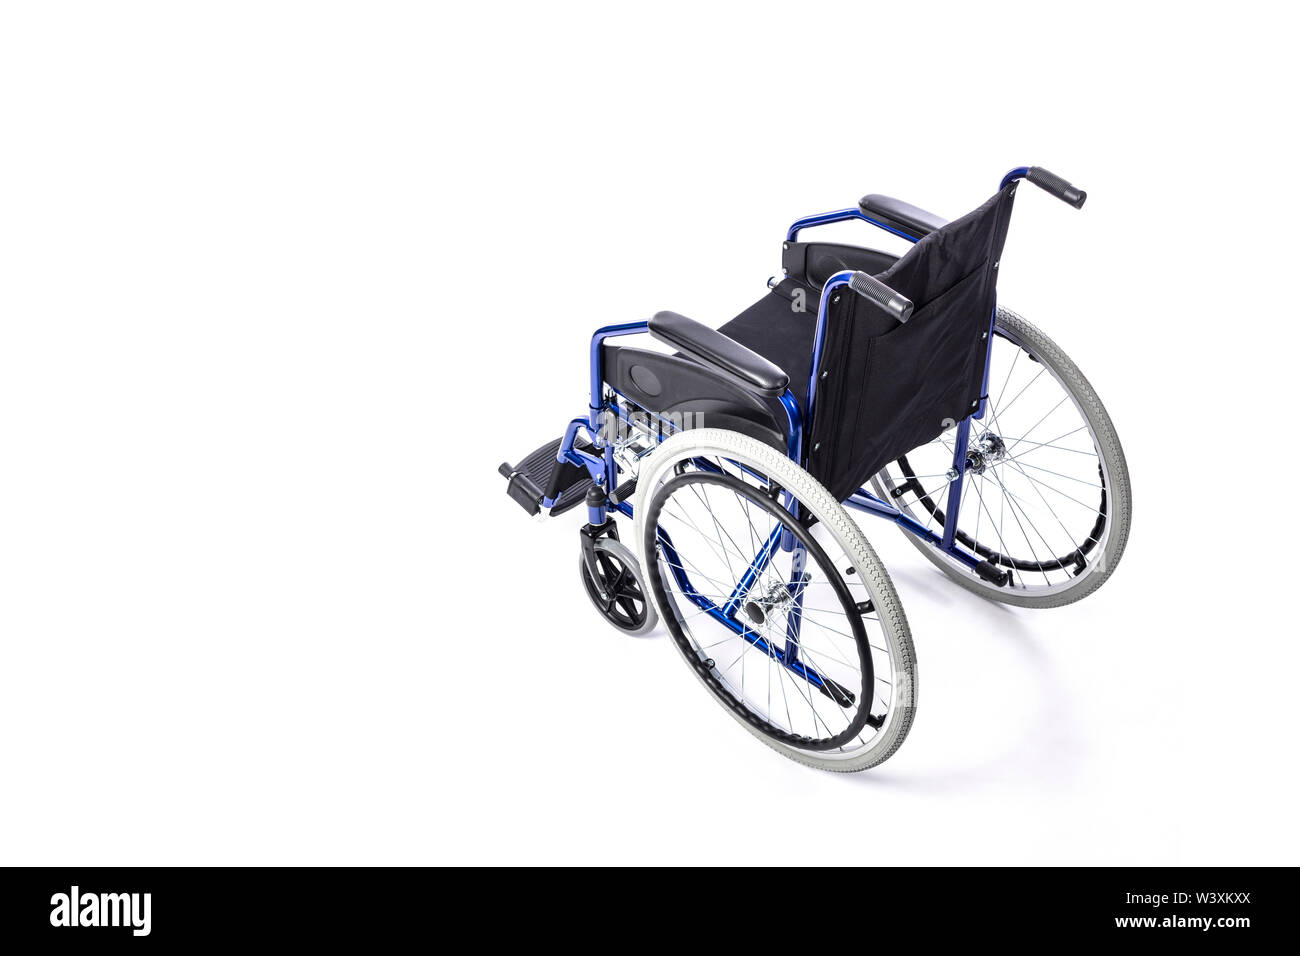 Fauteuil roulant pour les personnes à mobilité réduite en bleu sur un fond blanc. Concept d'incapacité et de l'assistance médicale. Banque D'Images